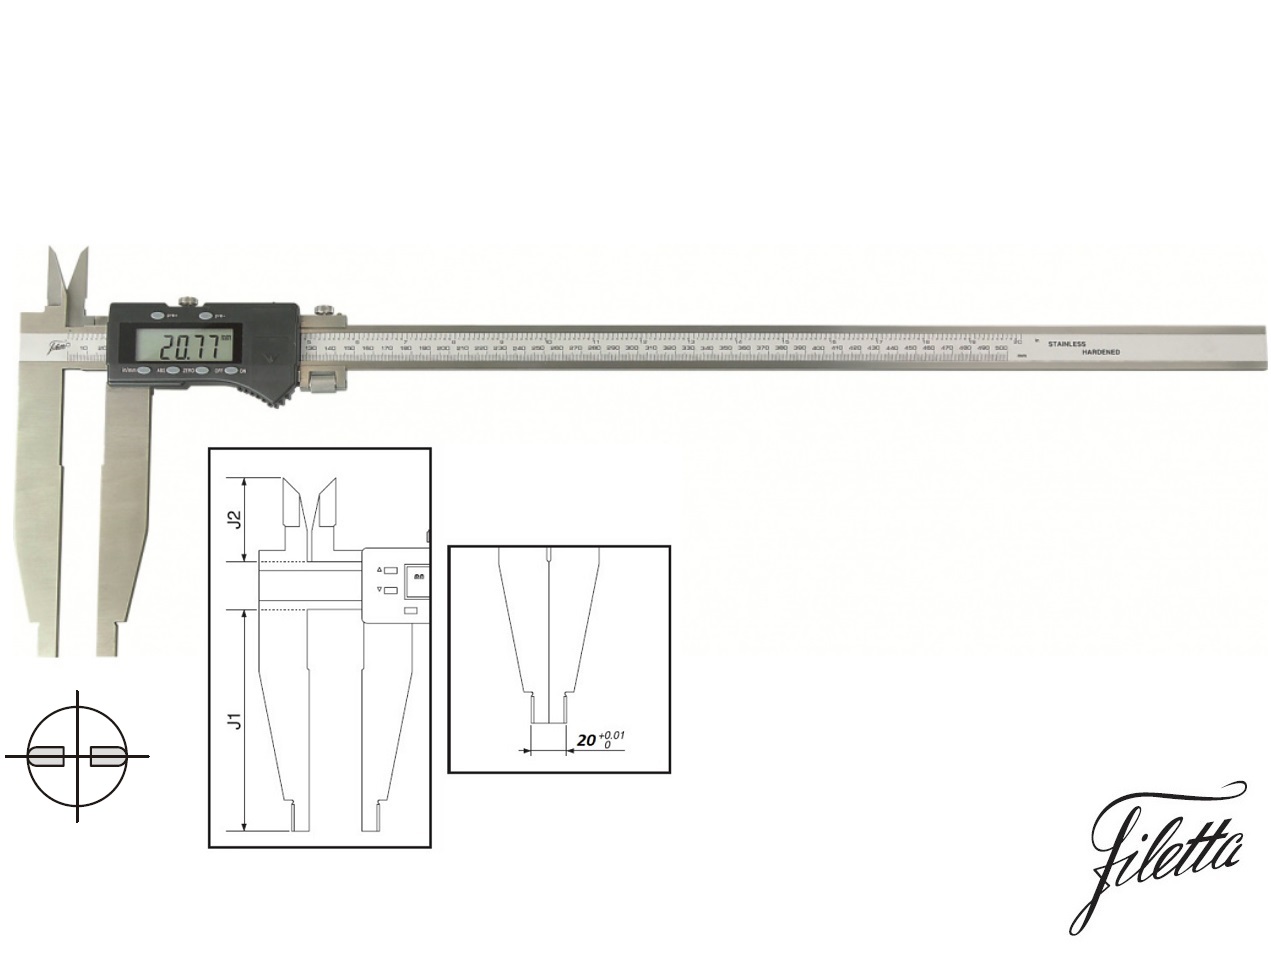 Digitální posuvné měřítko Filetta 0-300/150 mm s měřicími nožíky pro vnitřní měření